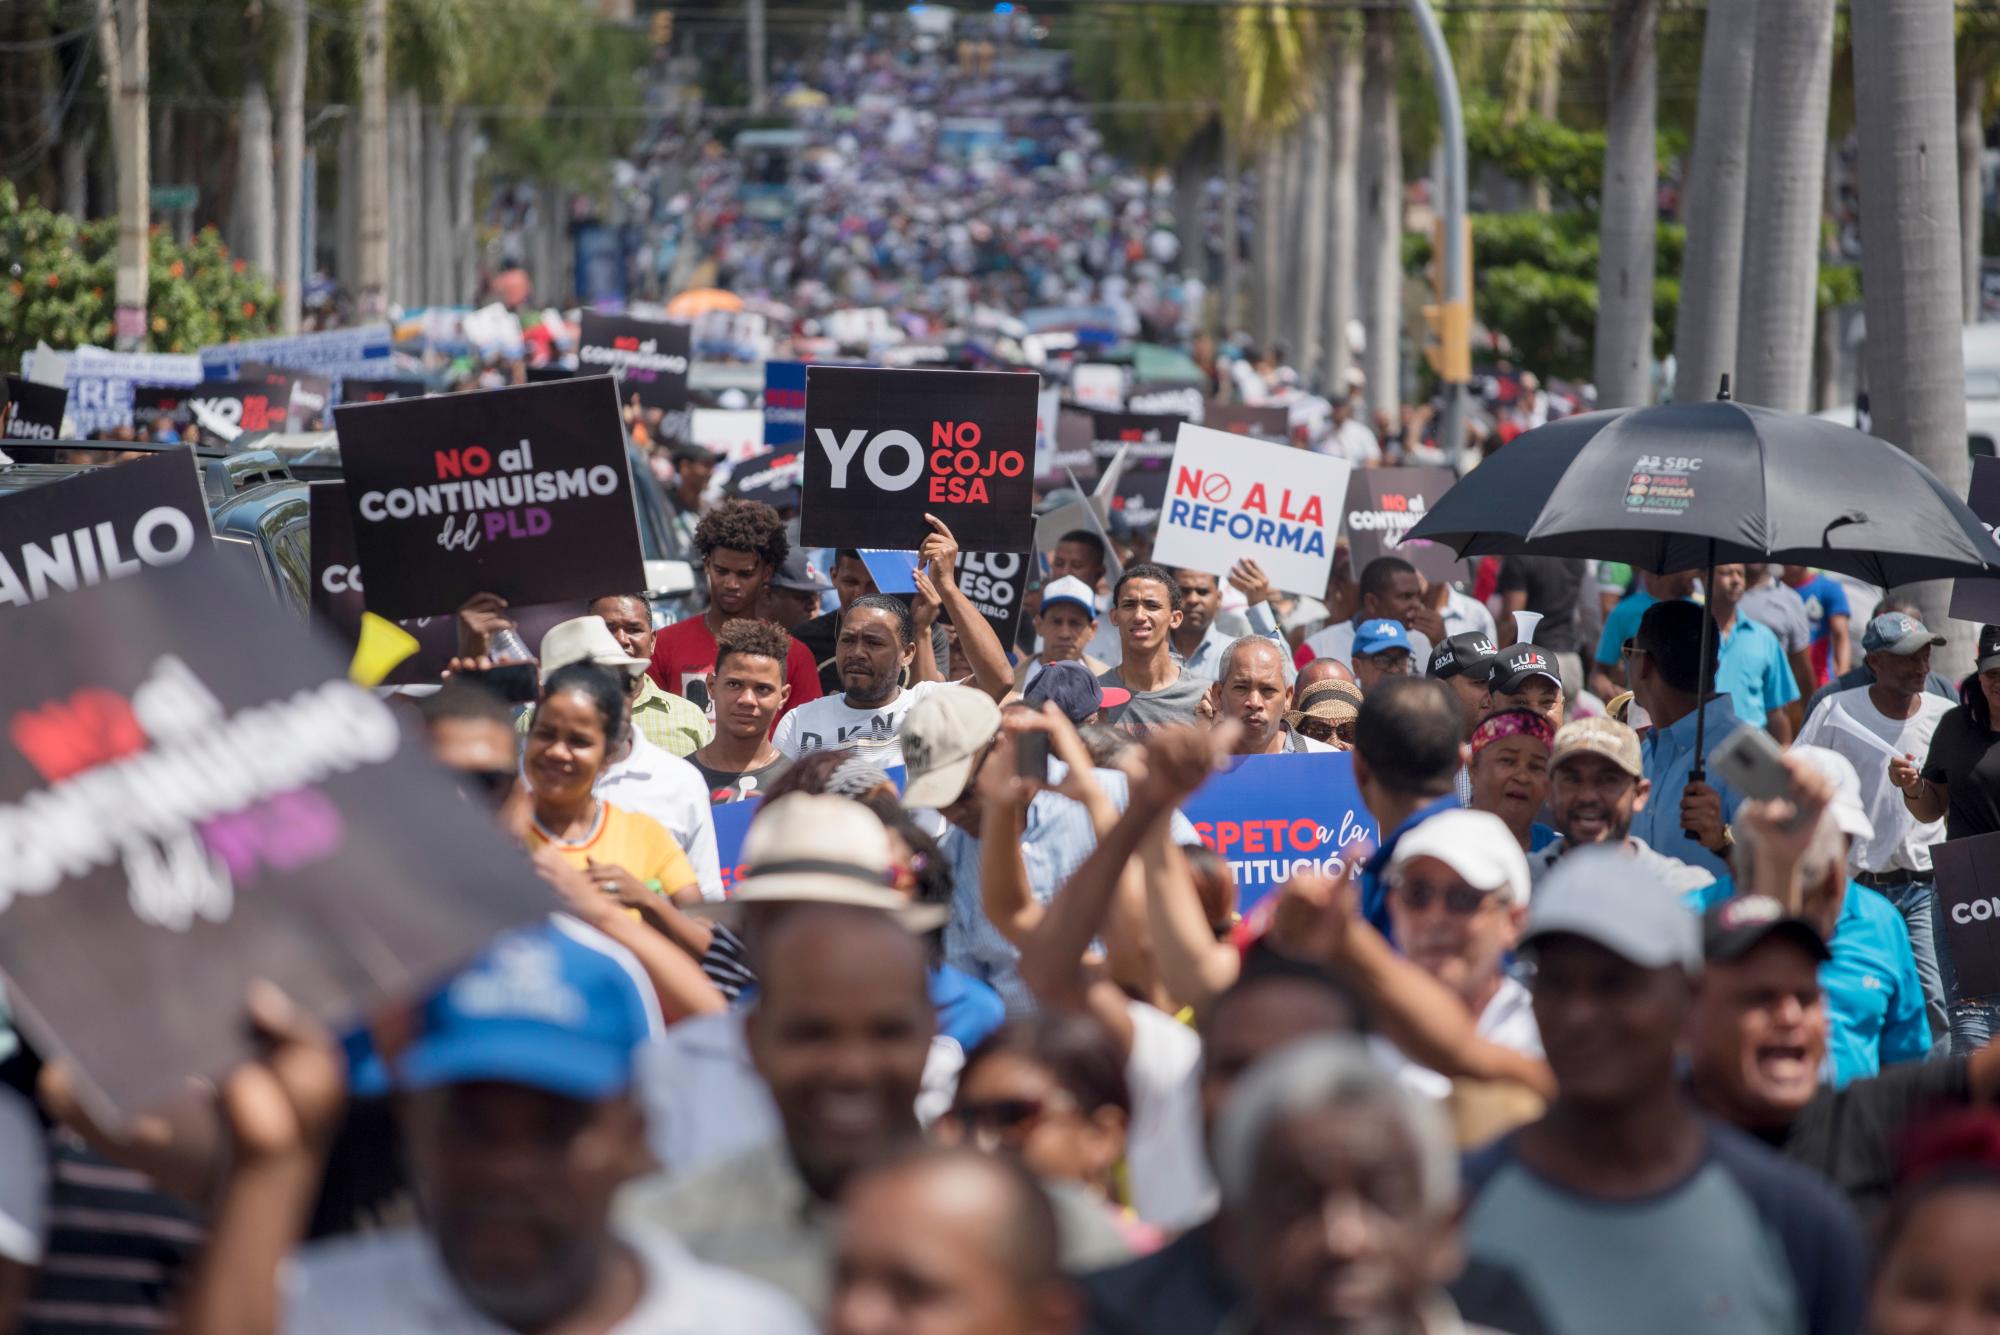 Cientos de participantes en la concentración al frente del Congreso Nacional, en protesta contra una posible reforma de la Constitución el 13 de julio de 2019.